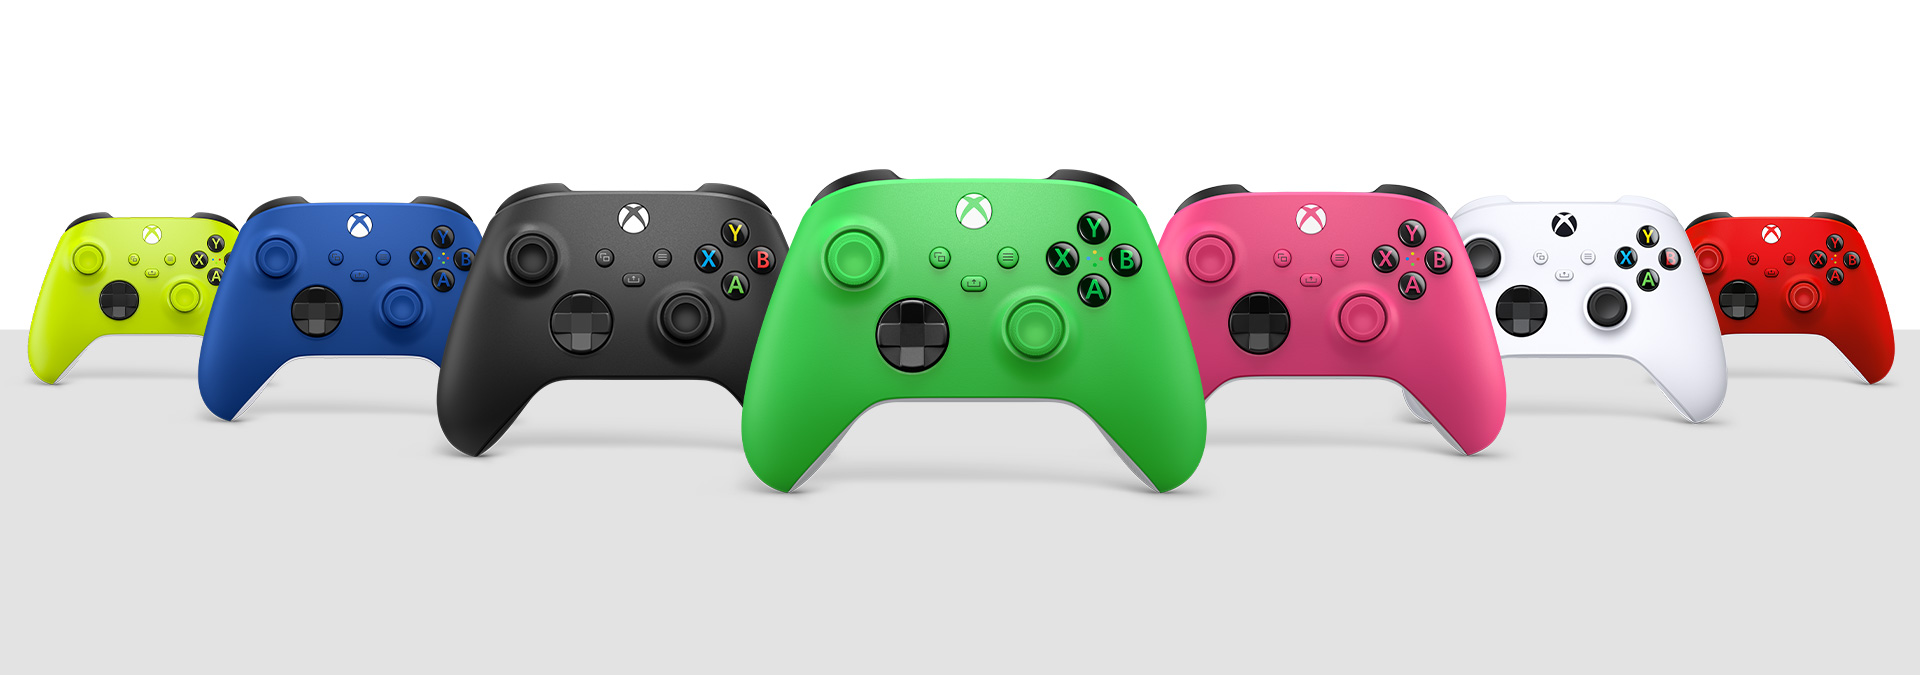 Controles inalámbricos Xbox en voltios eléctricos, azul brillante, negro carbón, verde, rosa intenso, blanco robot y rojo radiante